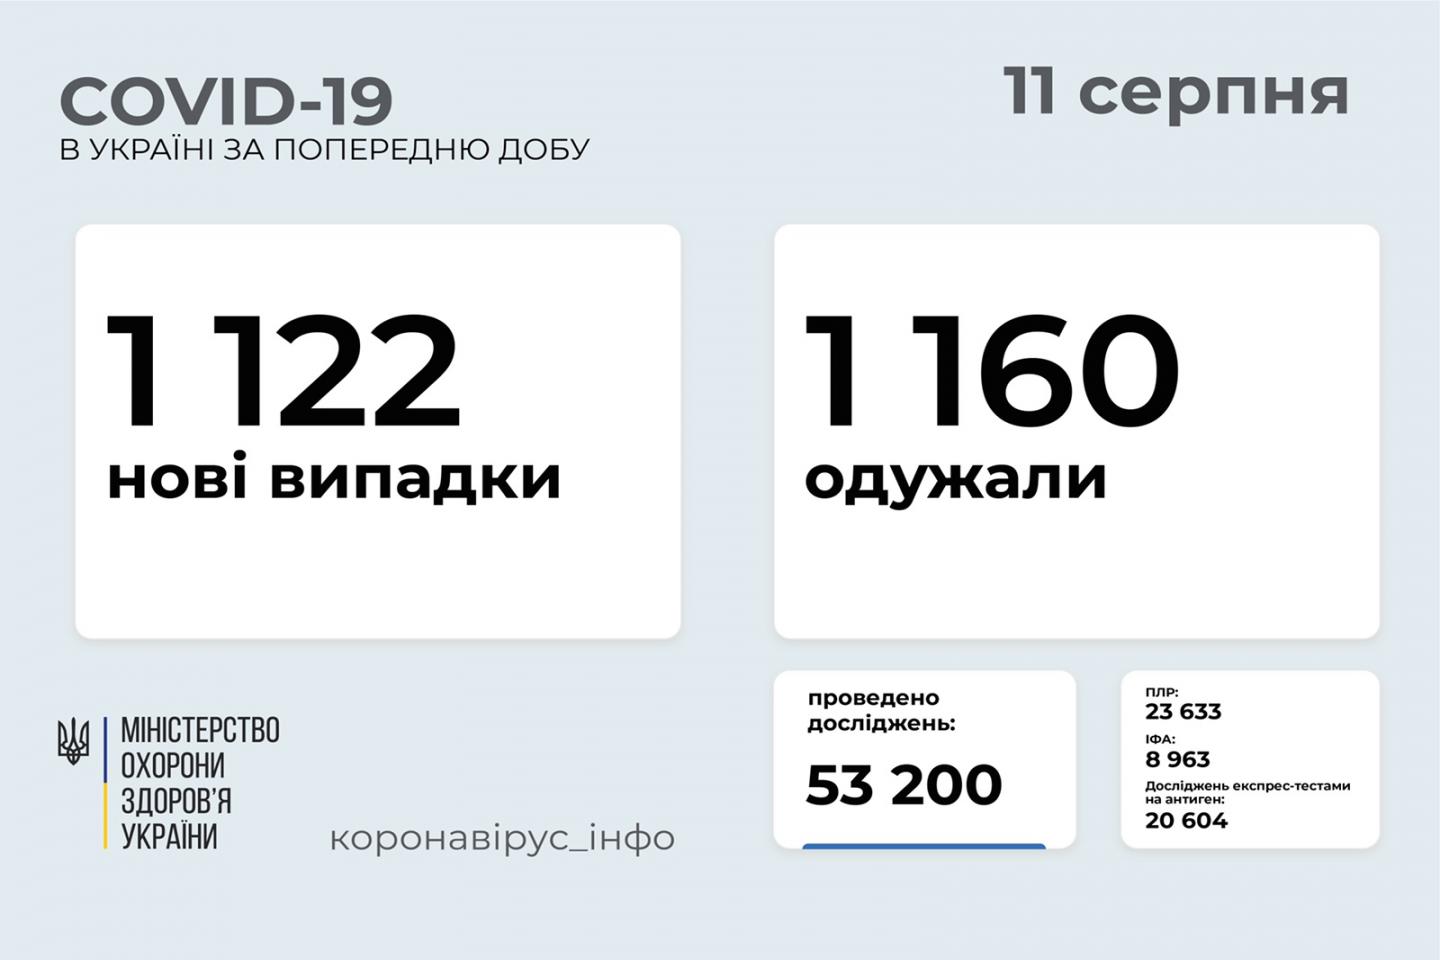 http://dunrada.gov.ua/uploadfile/archive_news/2021/08/11/2021-08-11_7751/images/images-28541.jpg